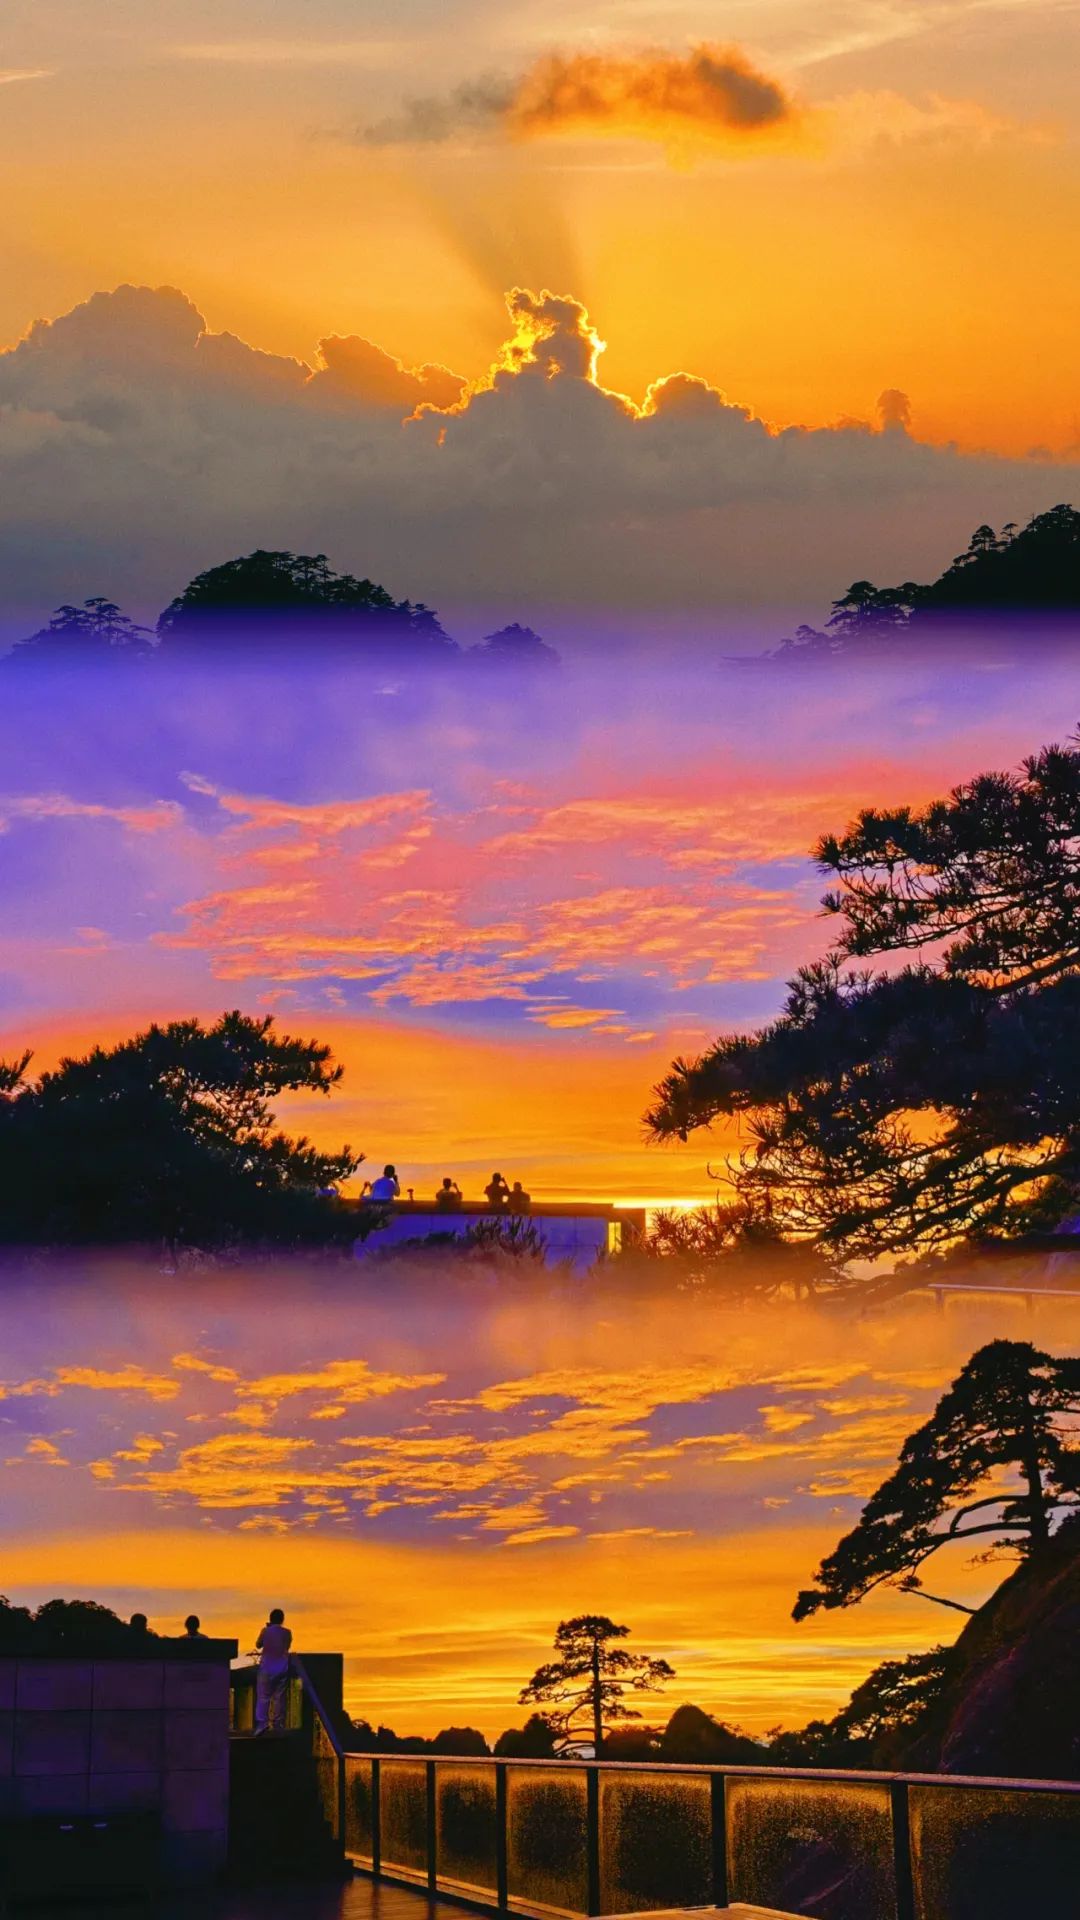 黄山日出日落,天地间最美的风景!